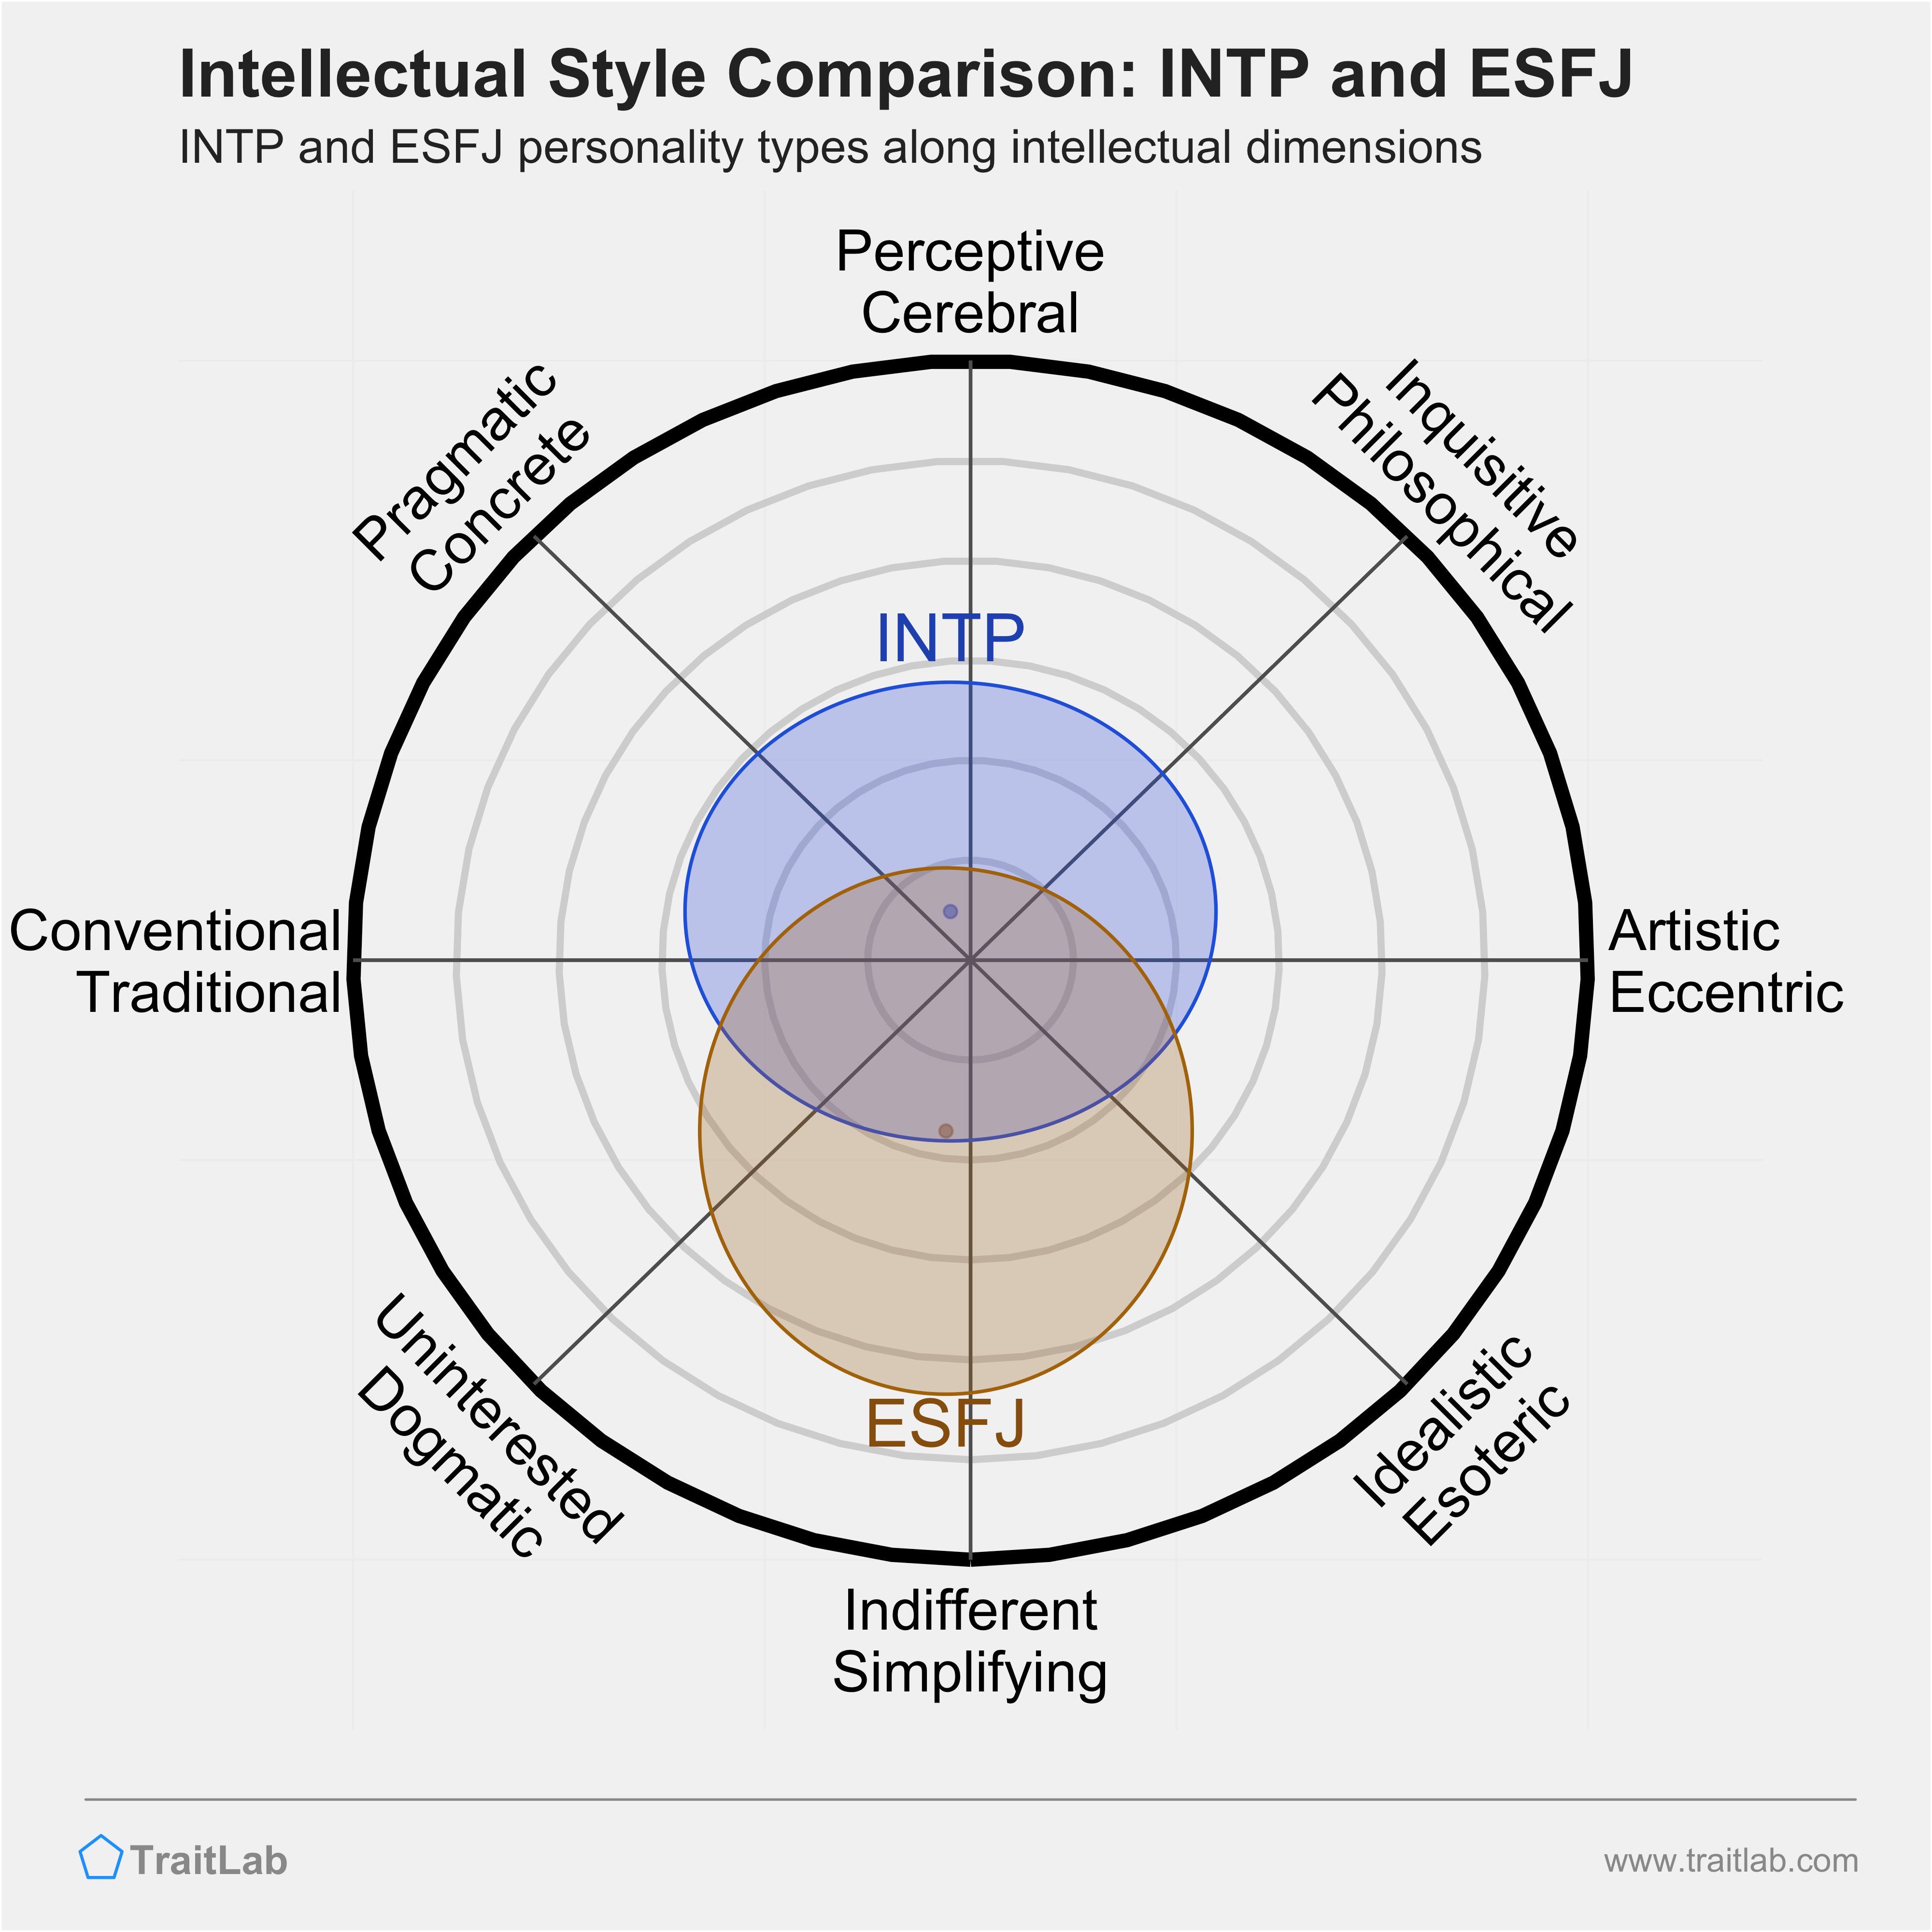 INTP and ESFJ comparison across intellectual dimensions